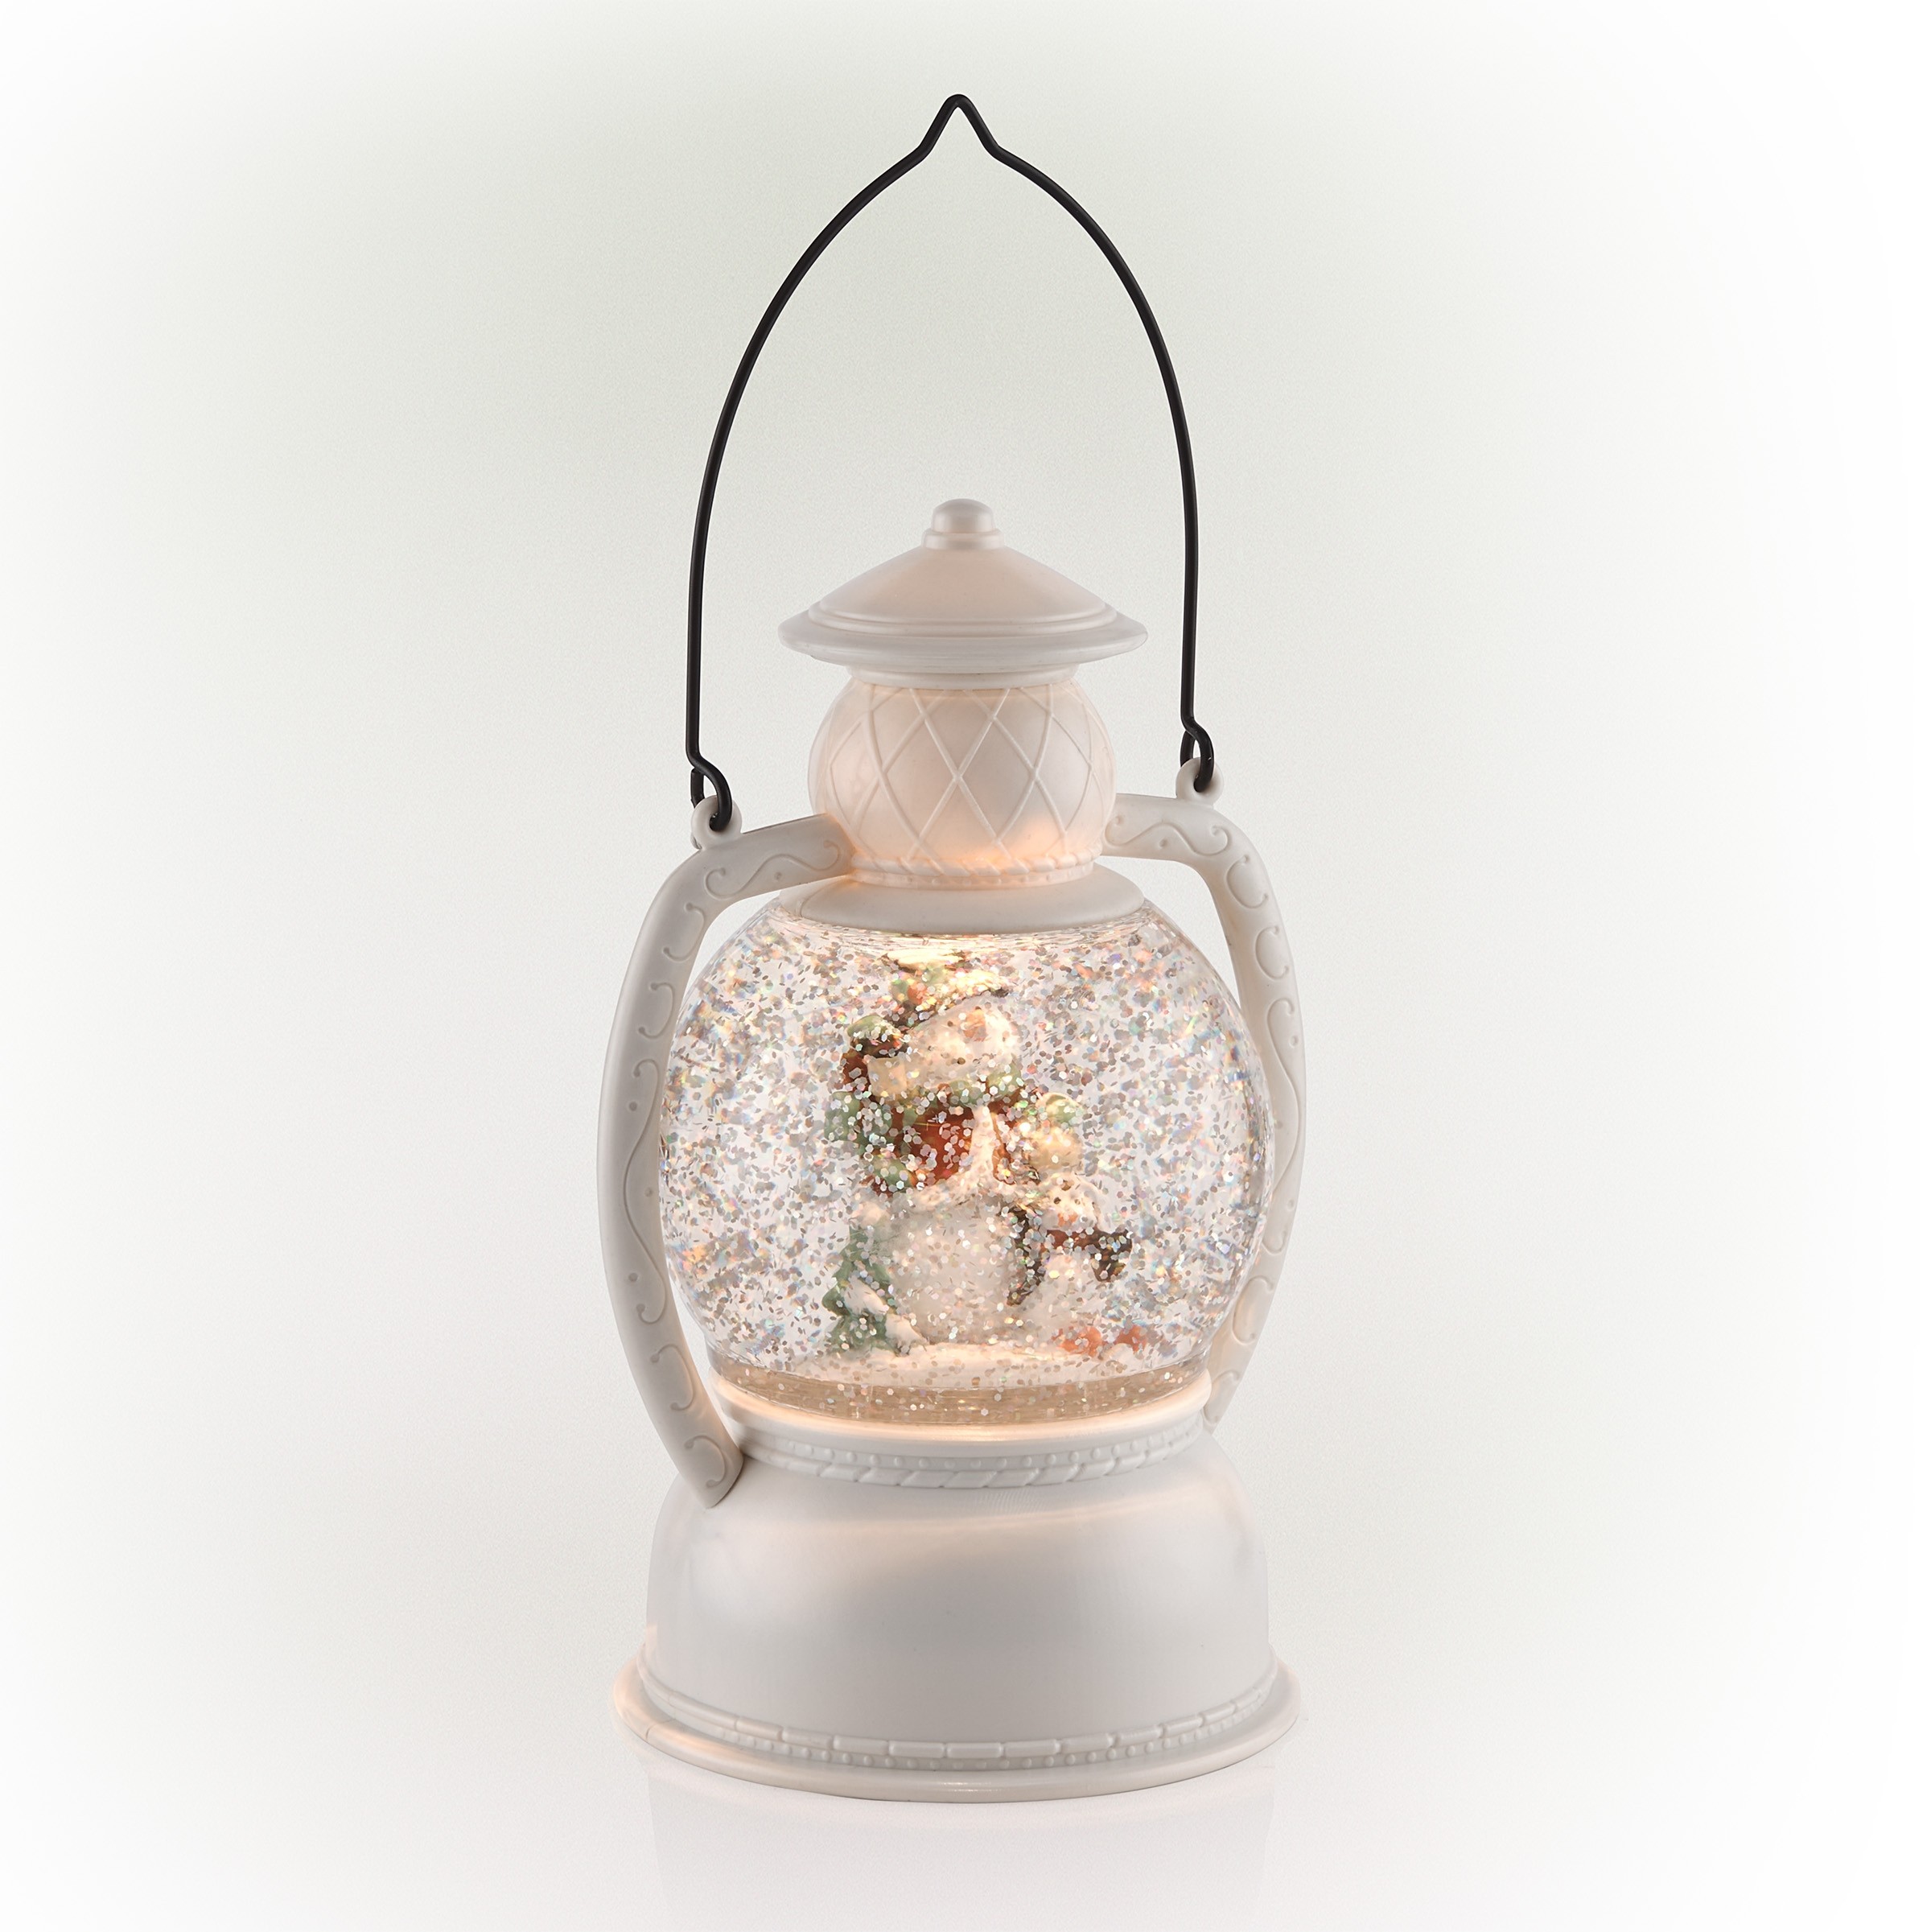 11" White Christmas Snow Globe Lantern with Warm White LED Light